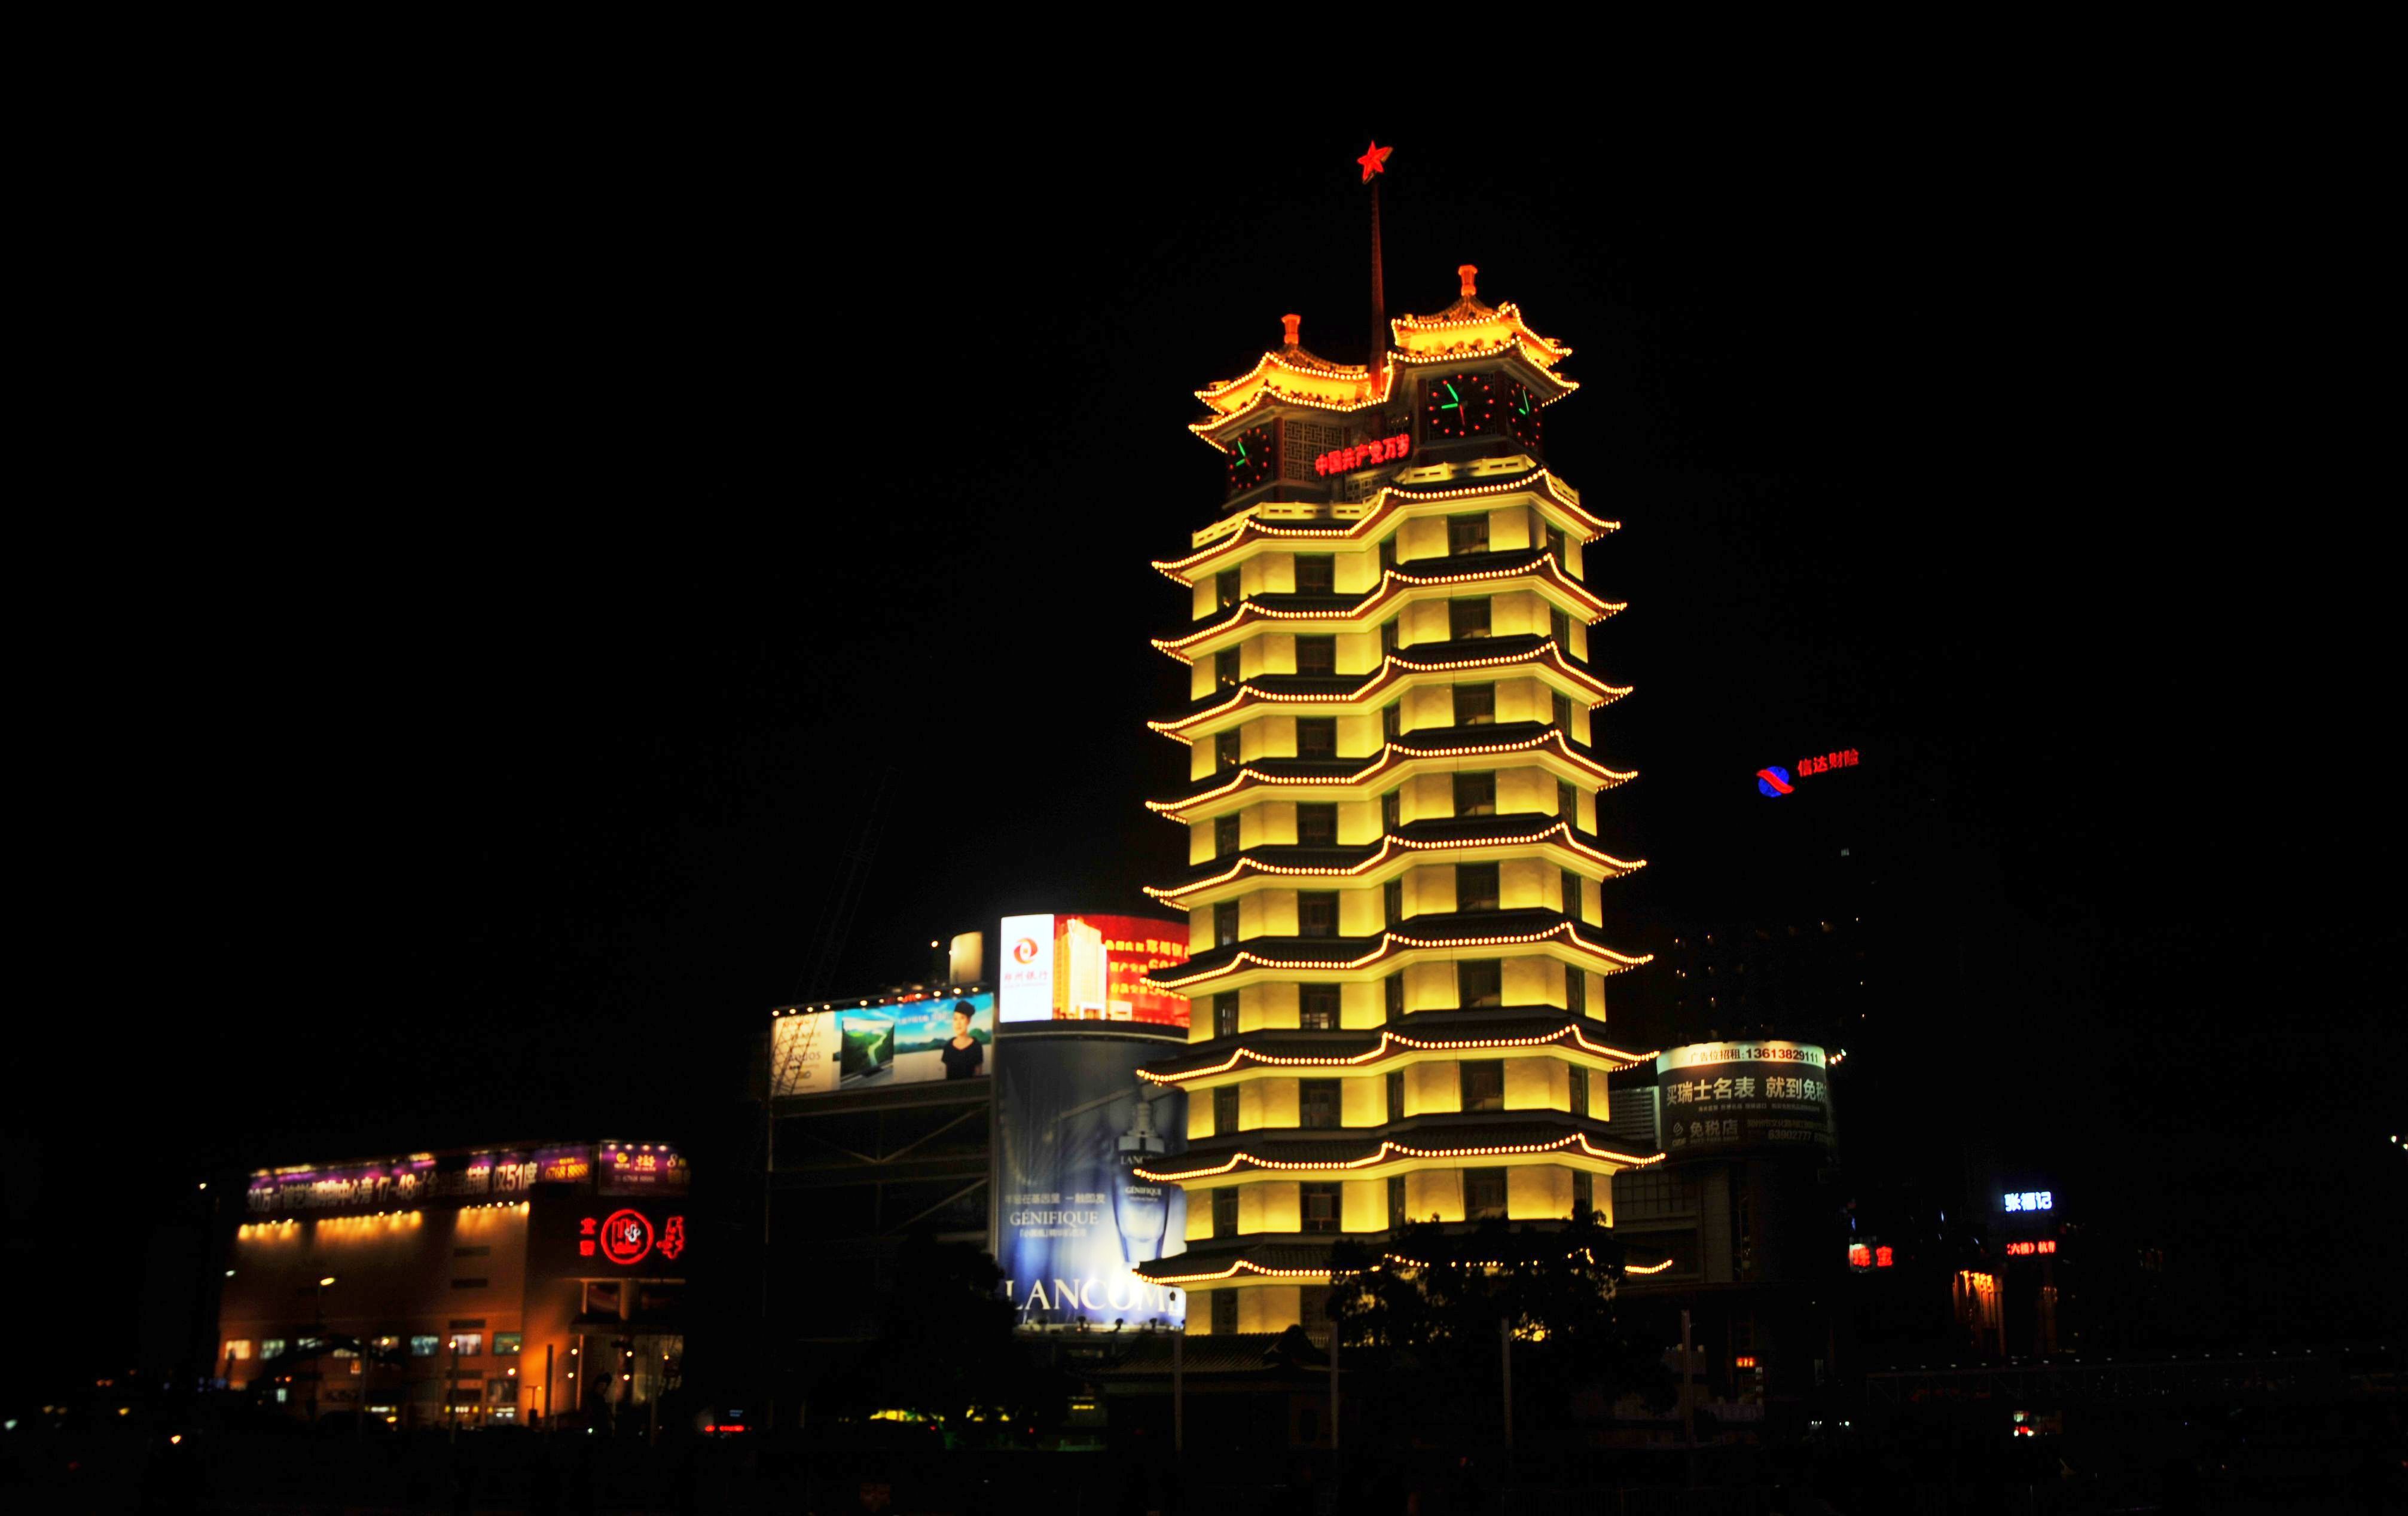 二七纪念塔郑州市的标志性建筑